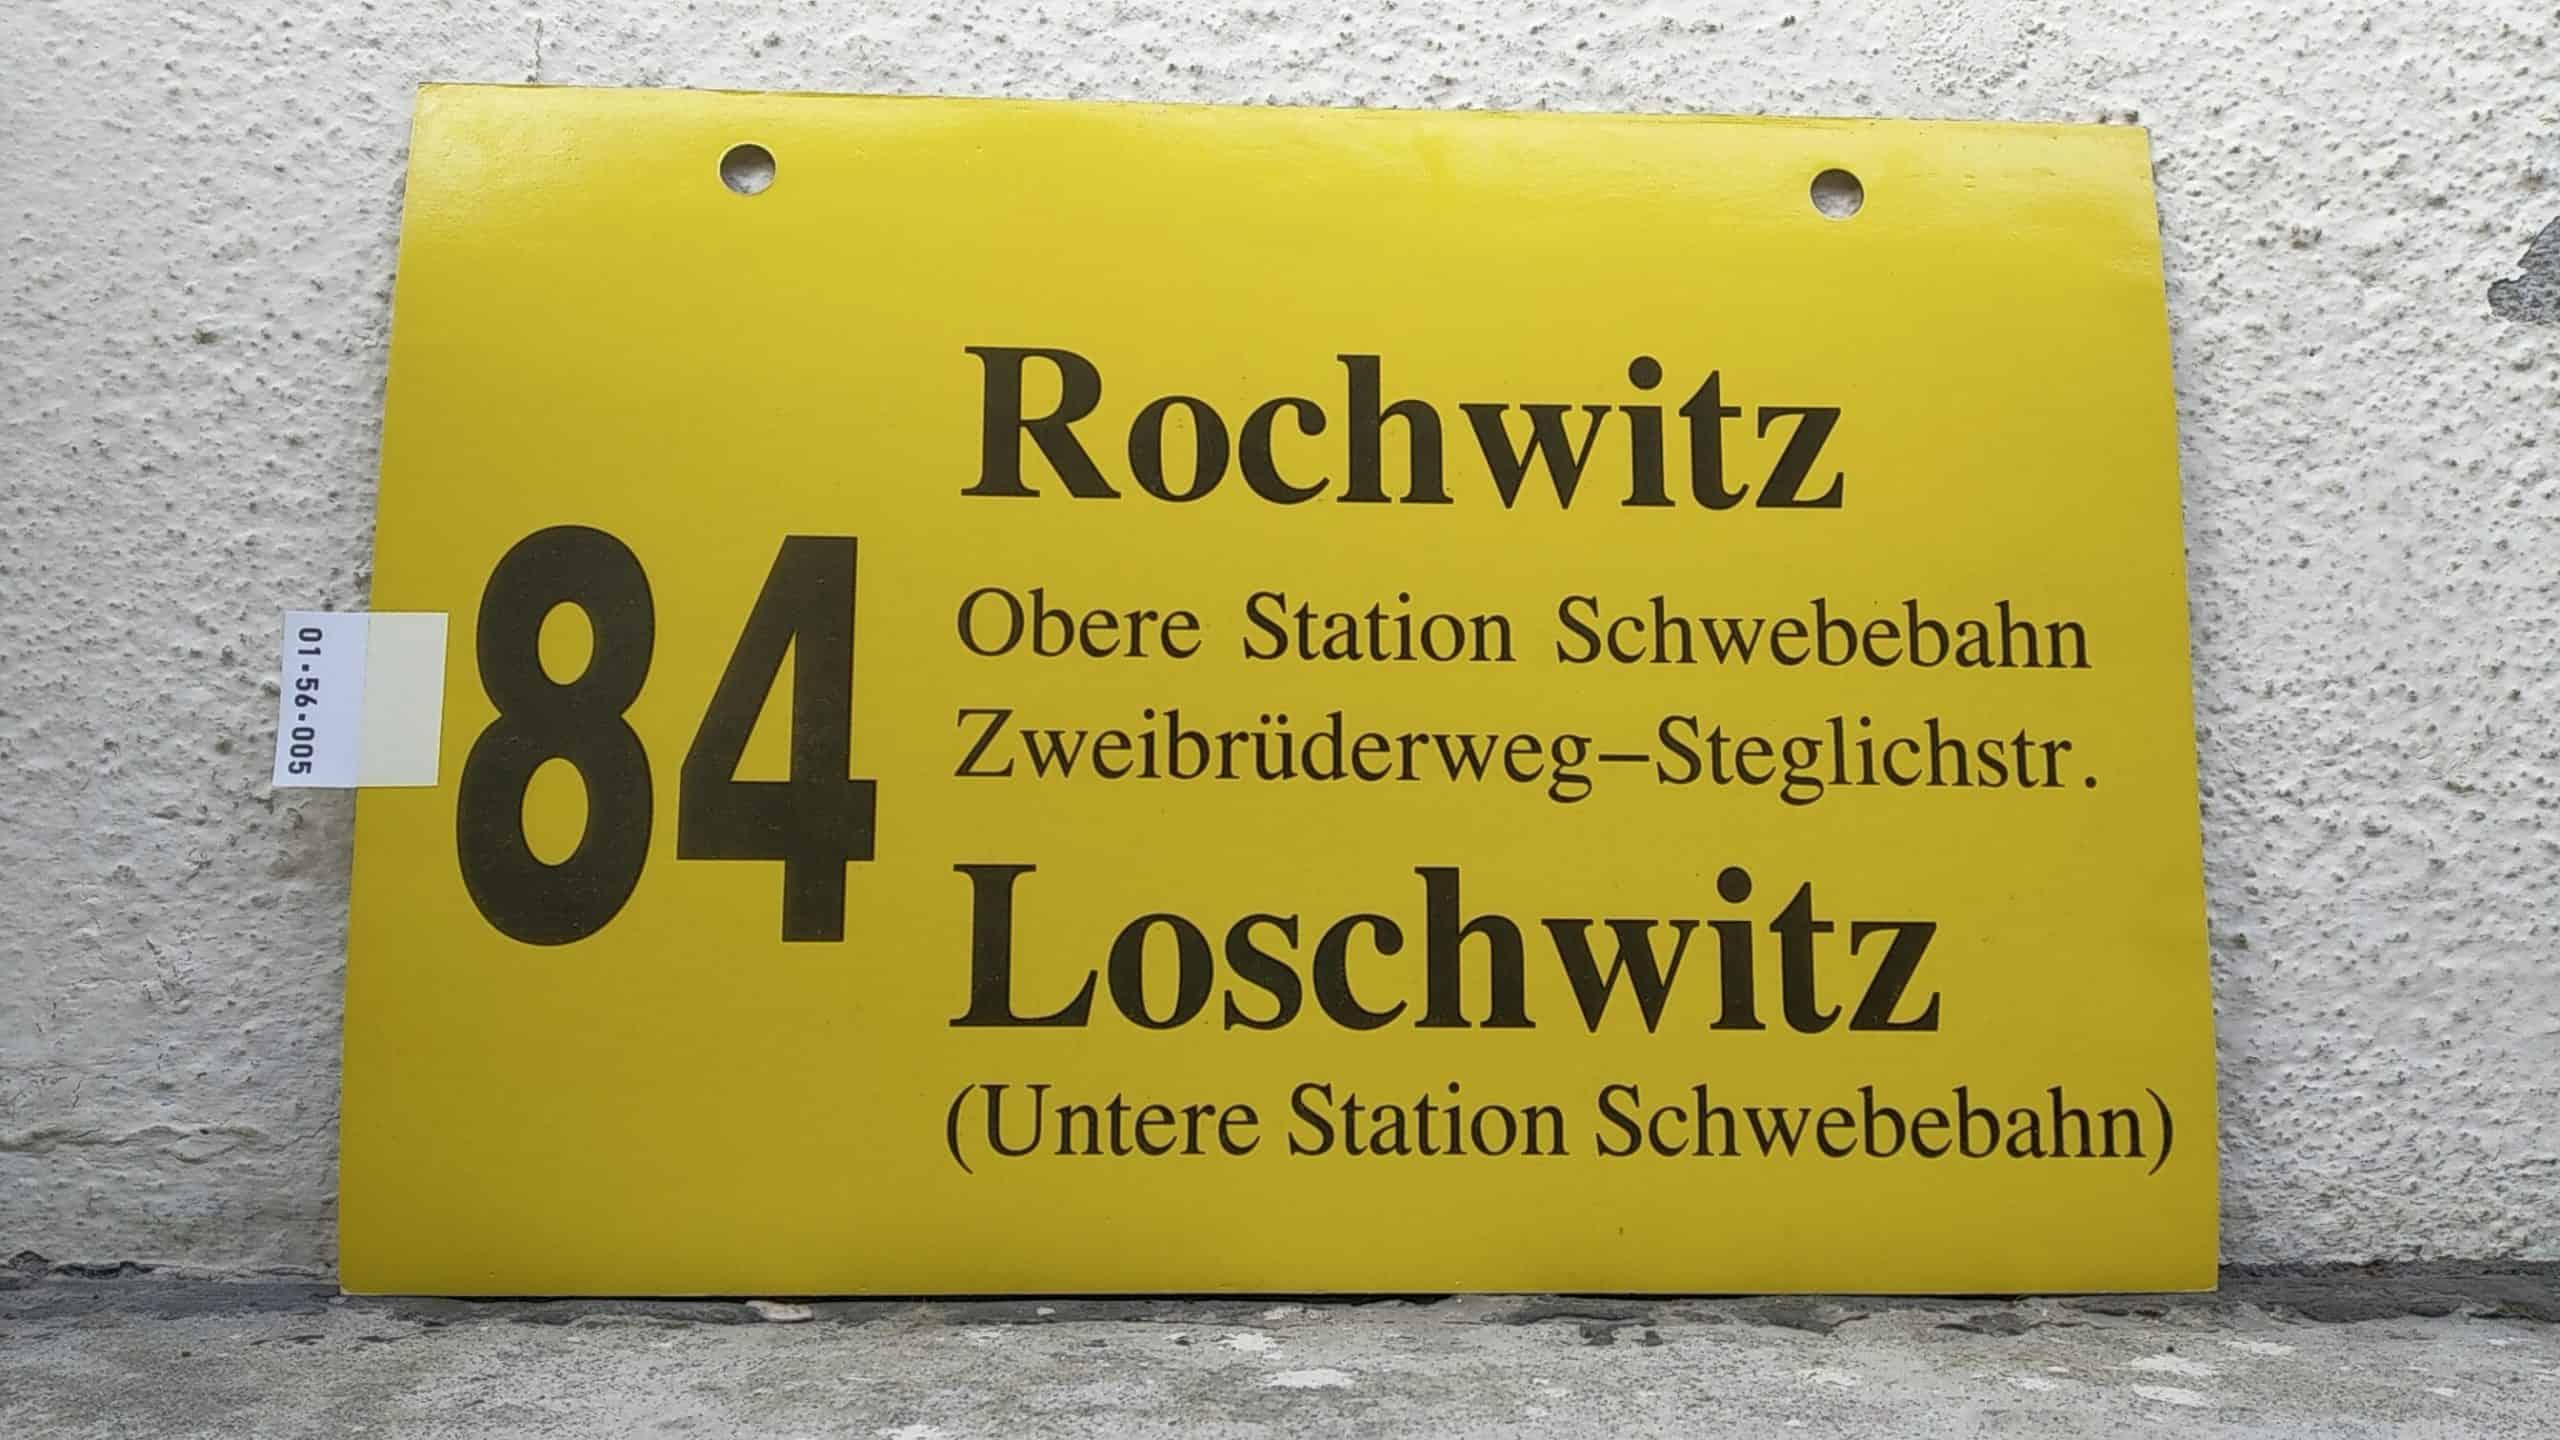 Ein seltenes Bus-Linienschild aus Dresden der Linie 84 von Rochwitz nach Loschwitz (Untere Station Schwebebahn)